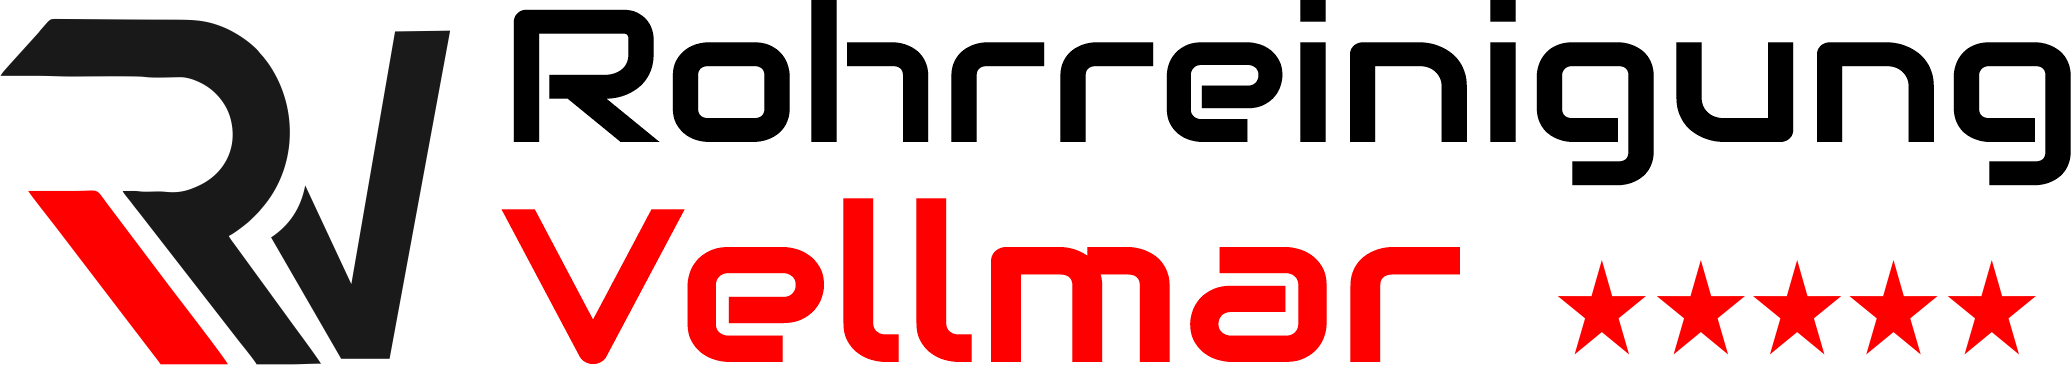 Rohrreinigung Vellmar Logo